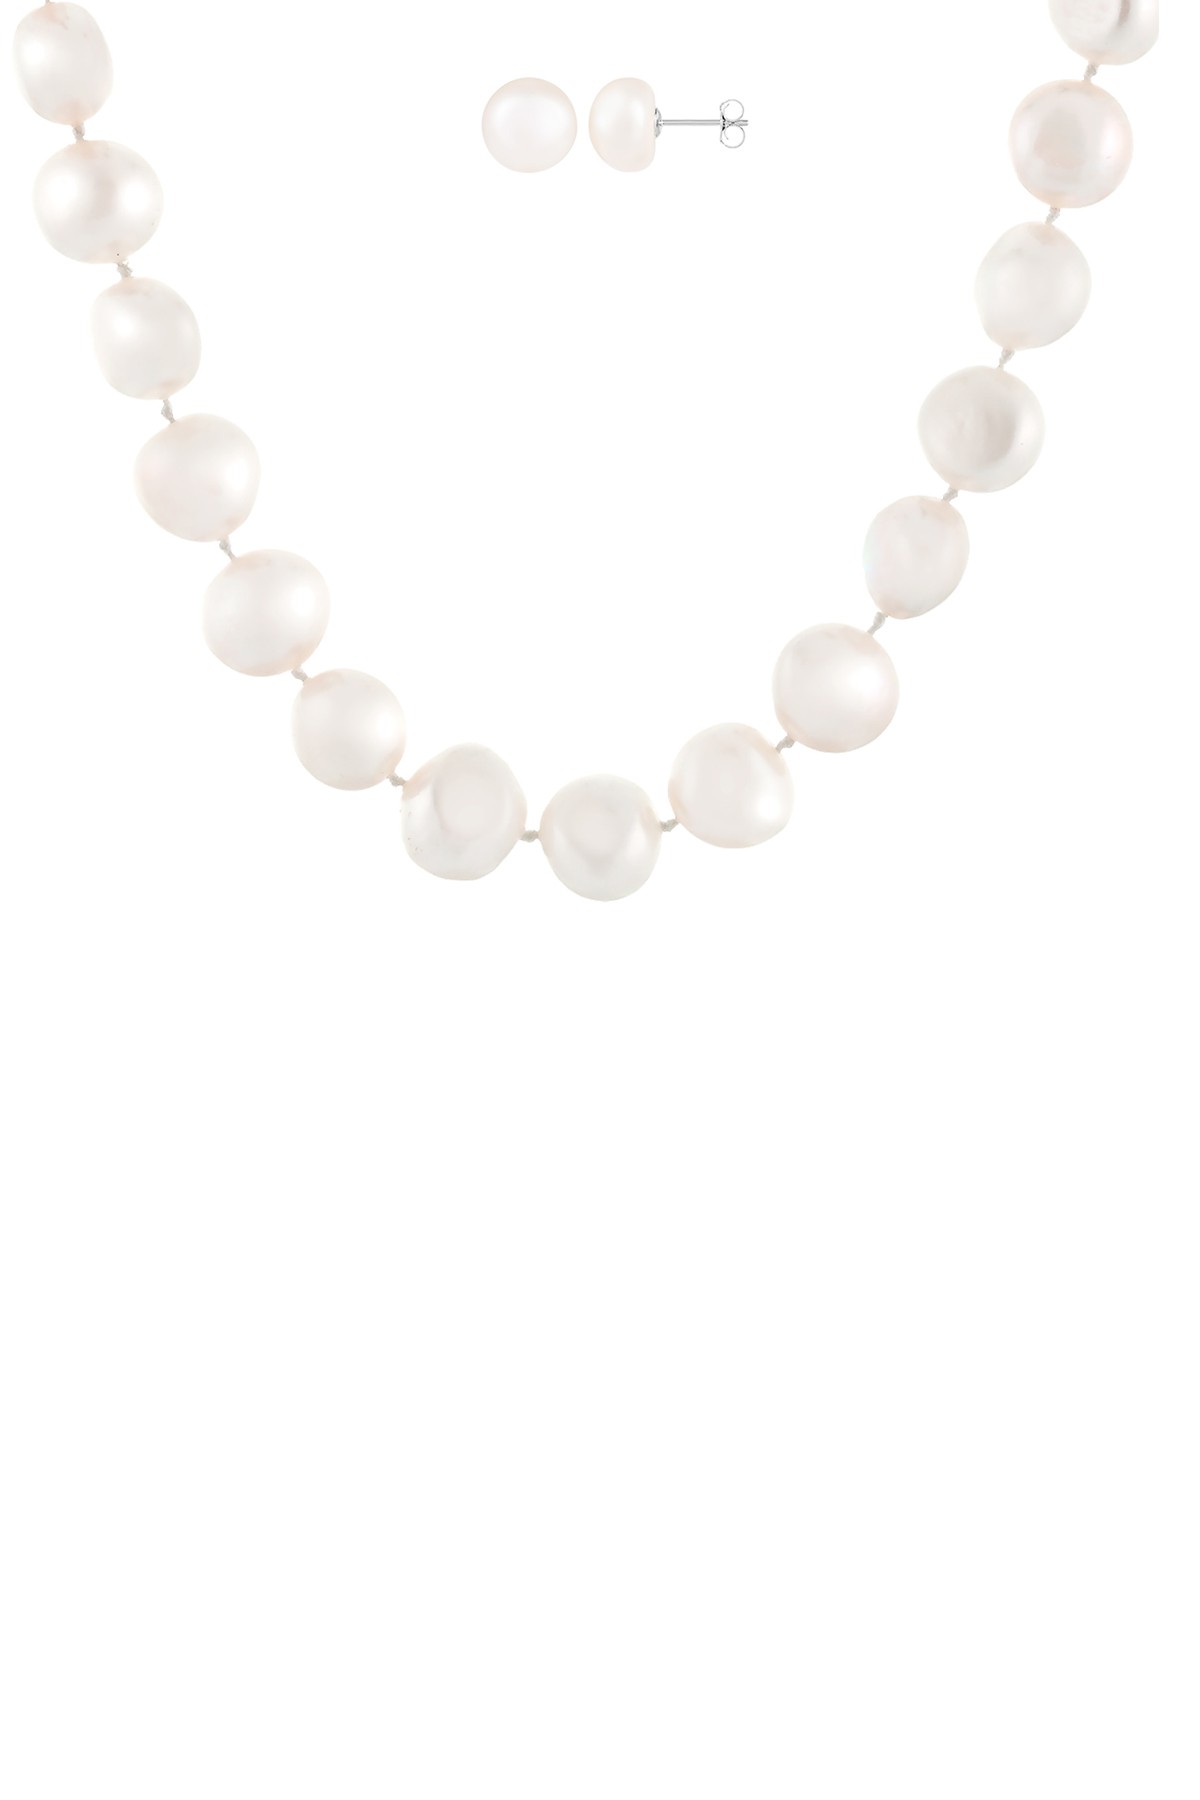 Комплект однониточного ожерелья и серег-гвоздиков с пресноводным жемчугом 11-12 мм Splendid Pearls